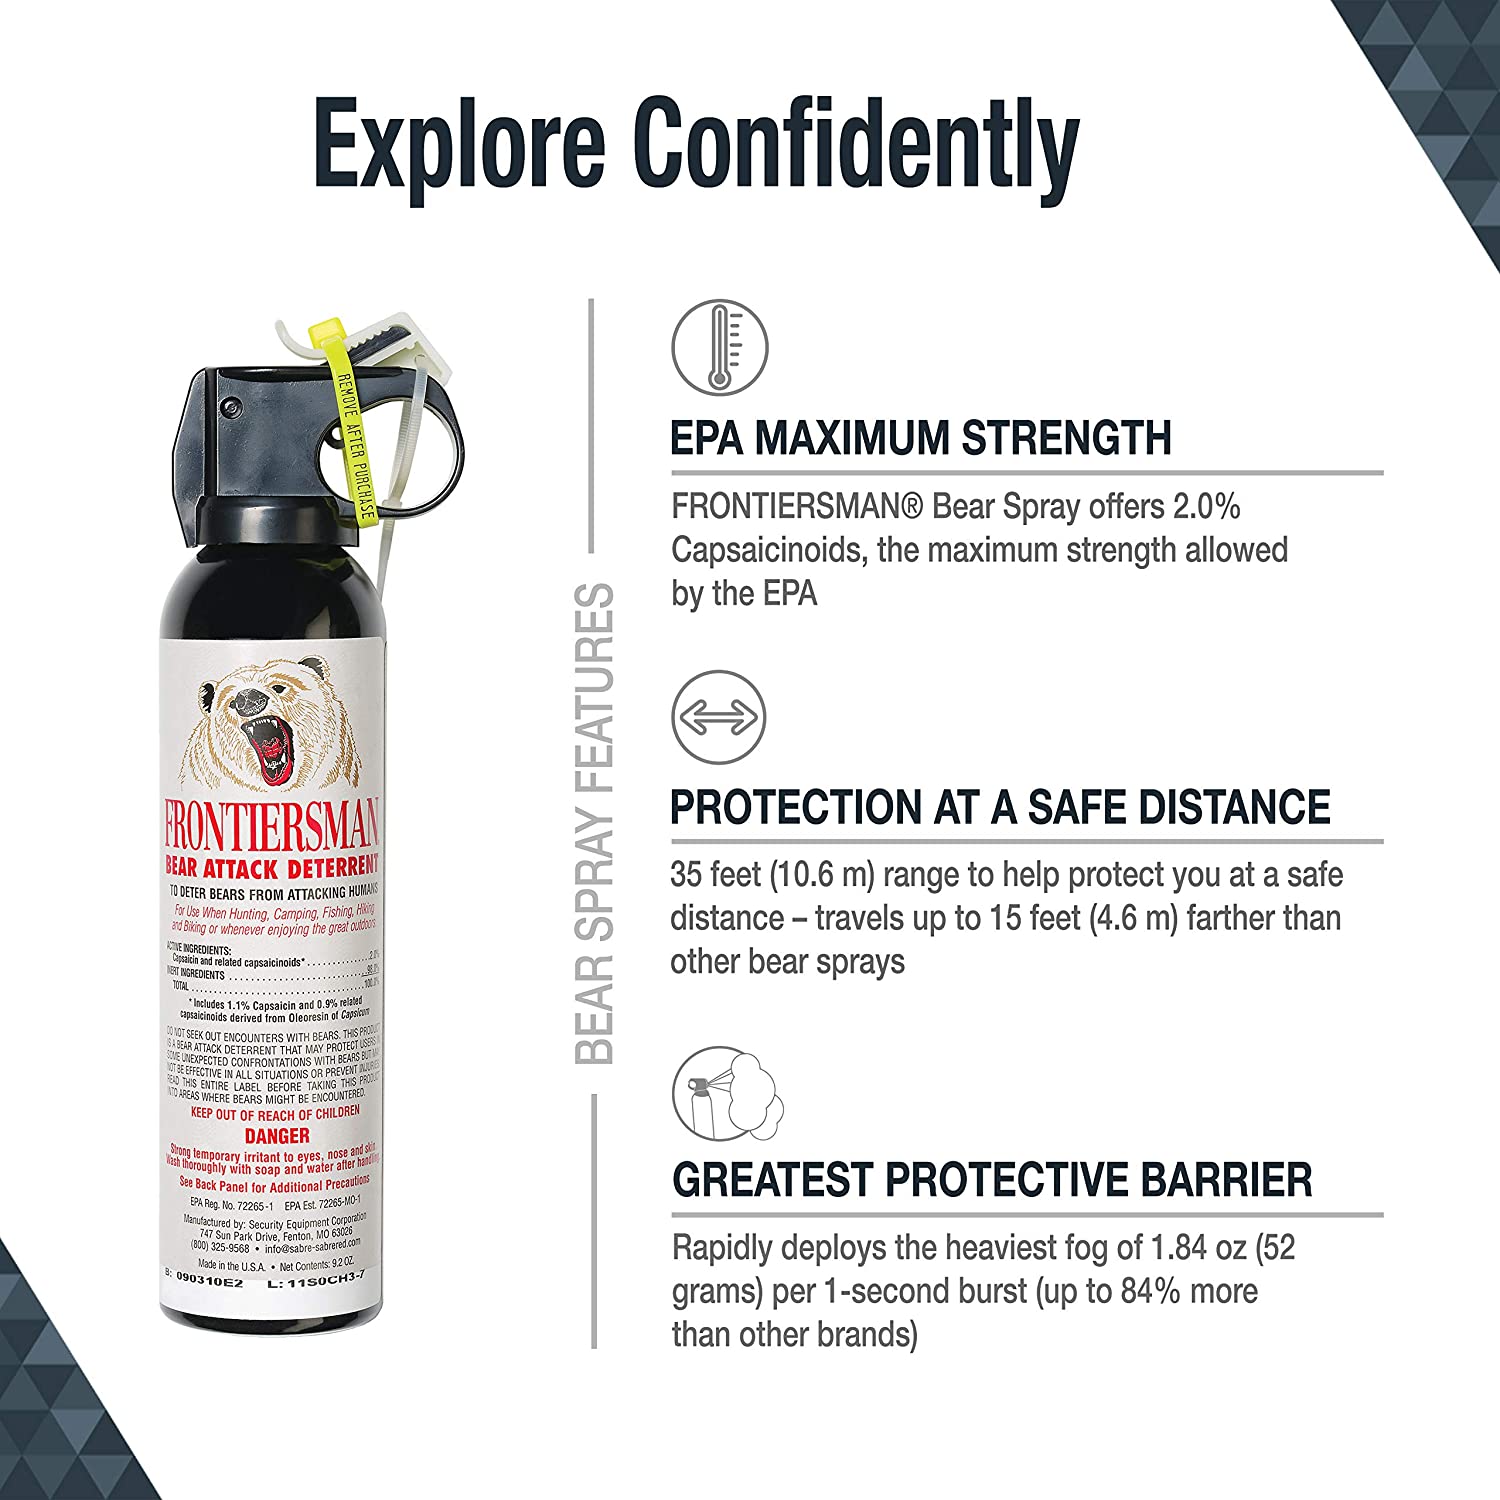 Frontiersman | Bear Spray Attack Deterrent, Emergency, Frontiersman, Defiance Outdoor Gear Co.